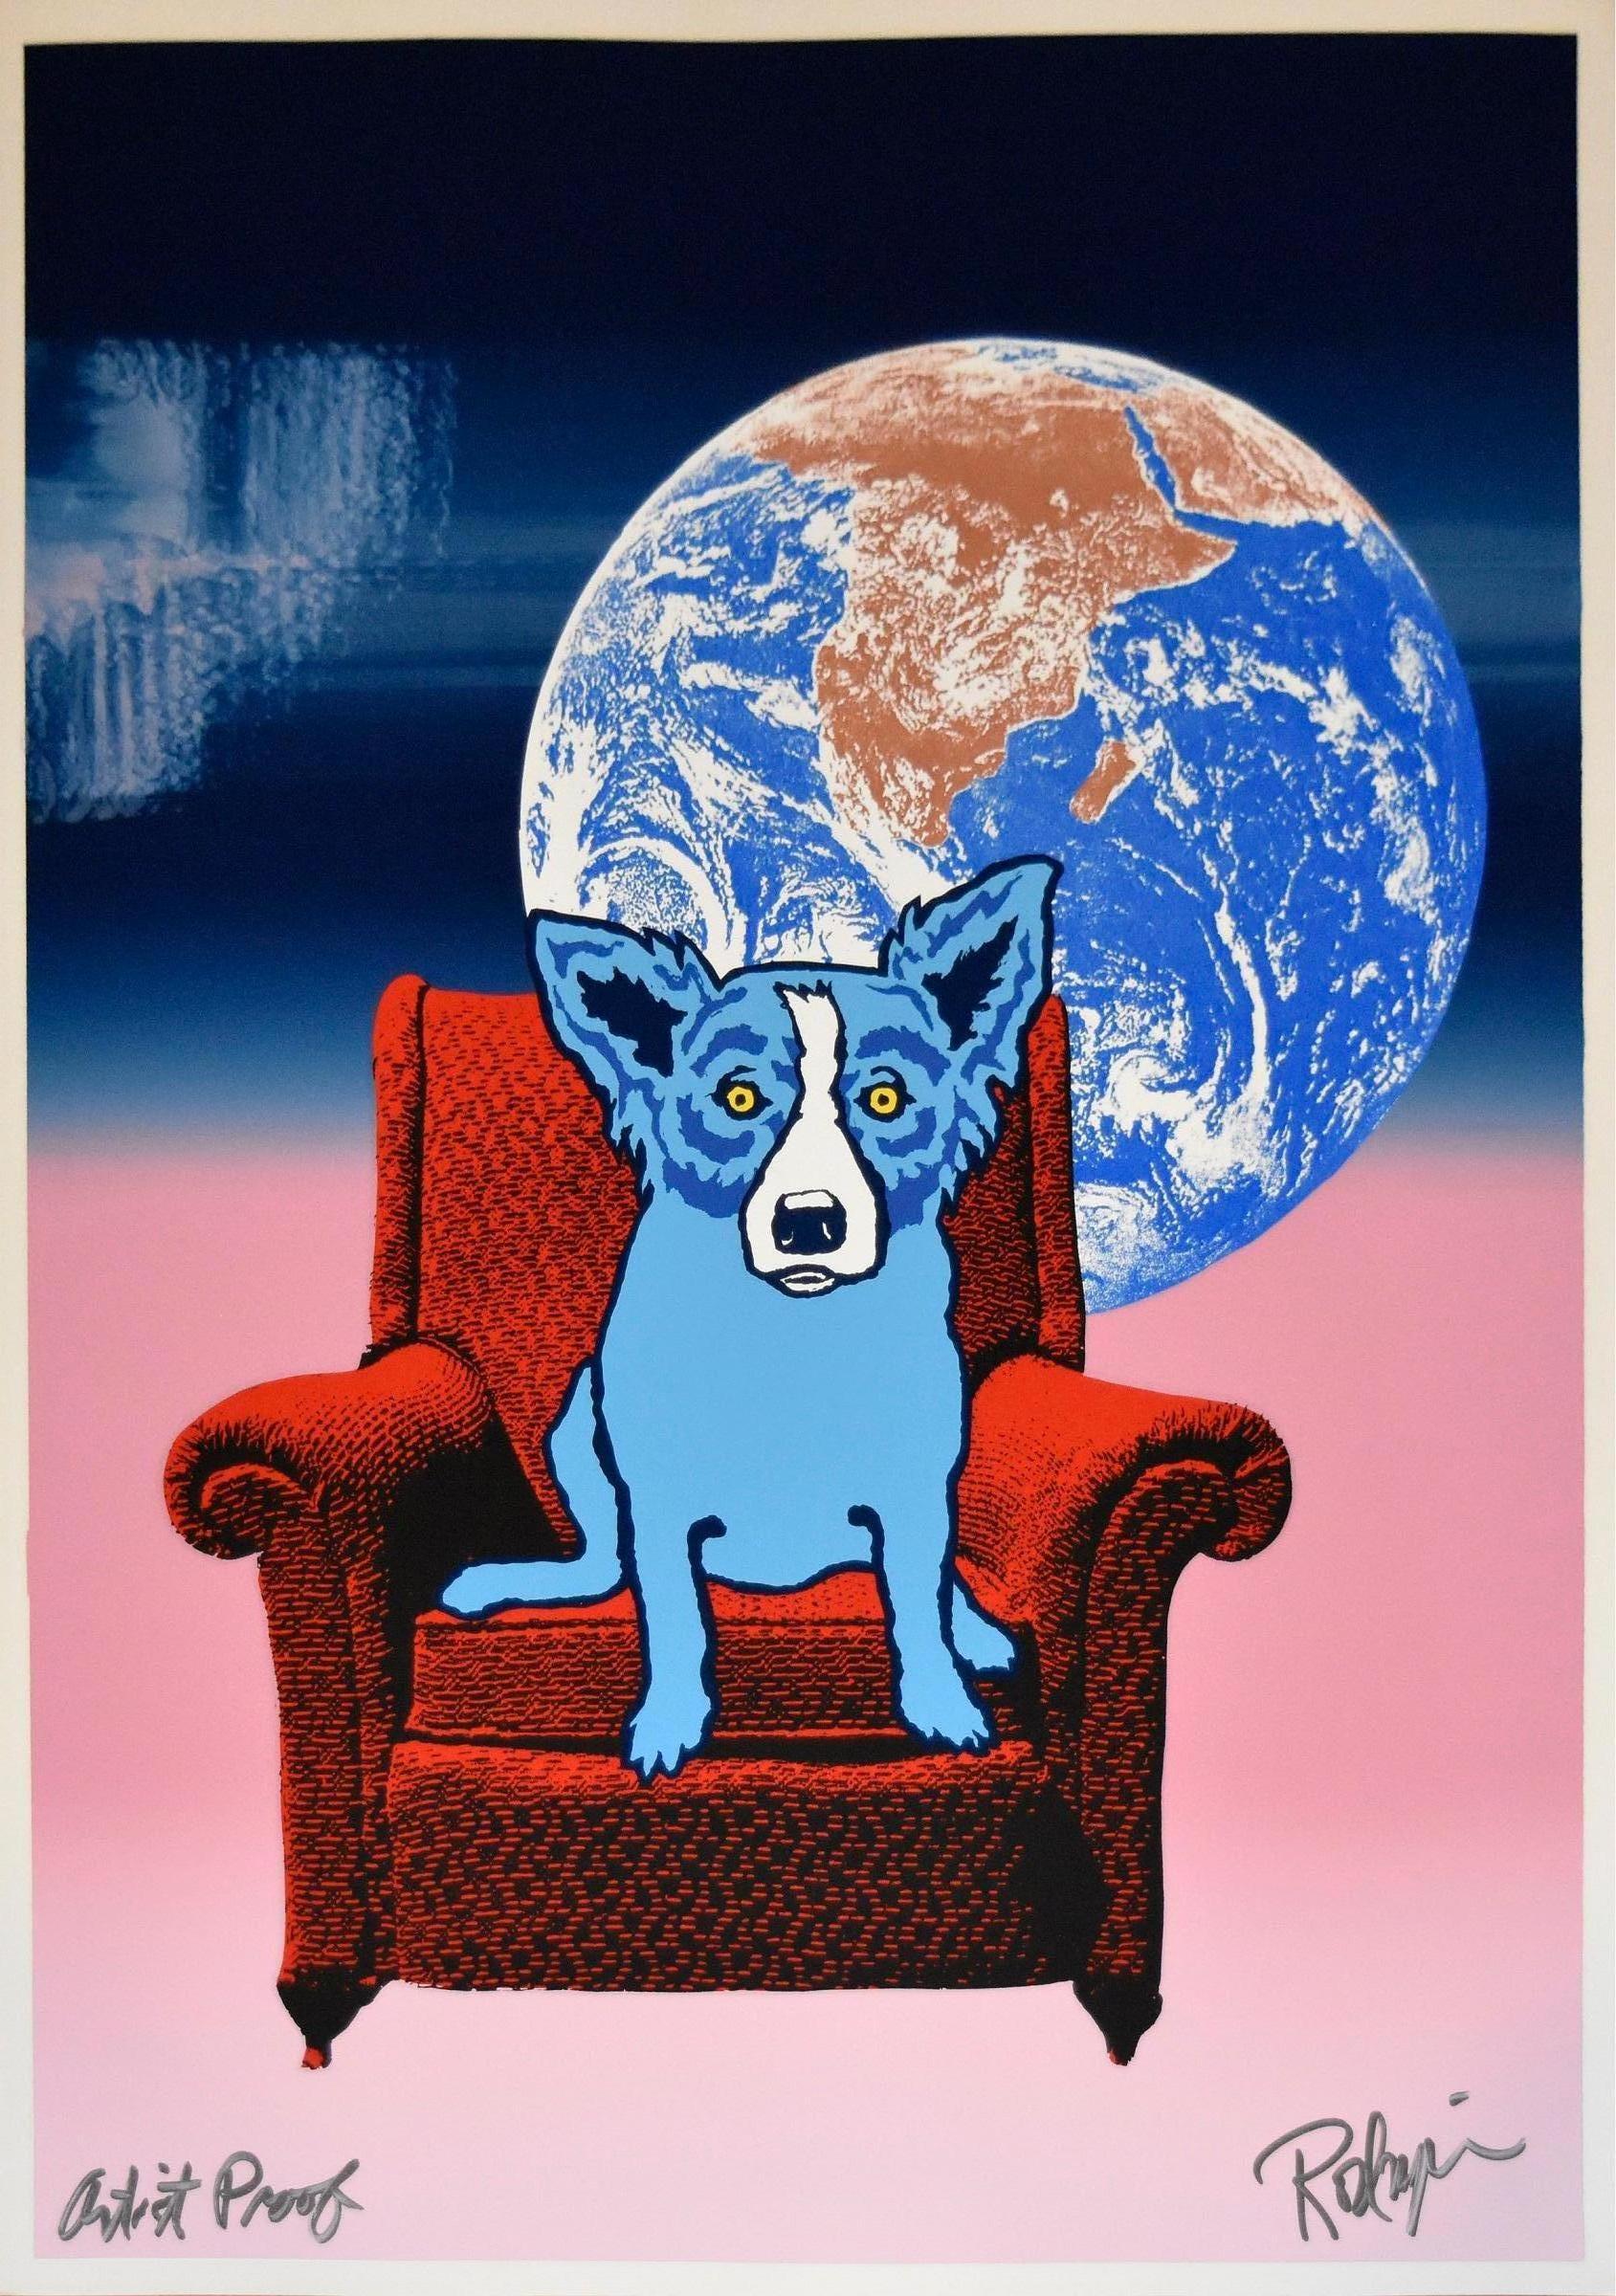 Space Chair - Split Font - Blau Rosa 2 - Siebdruck Signierter Druck - Blauer Hund